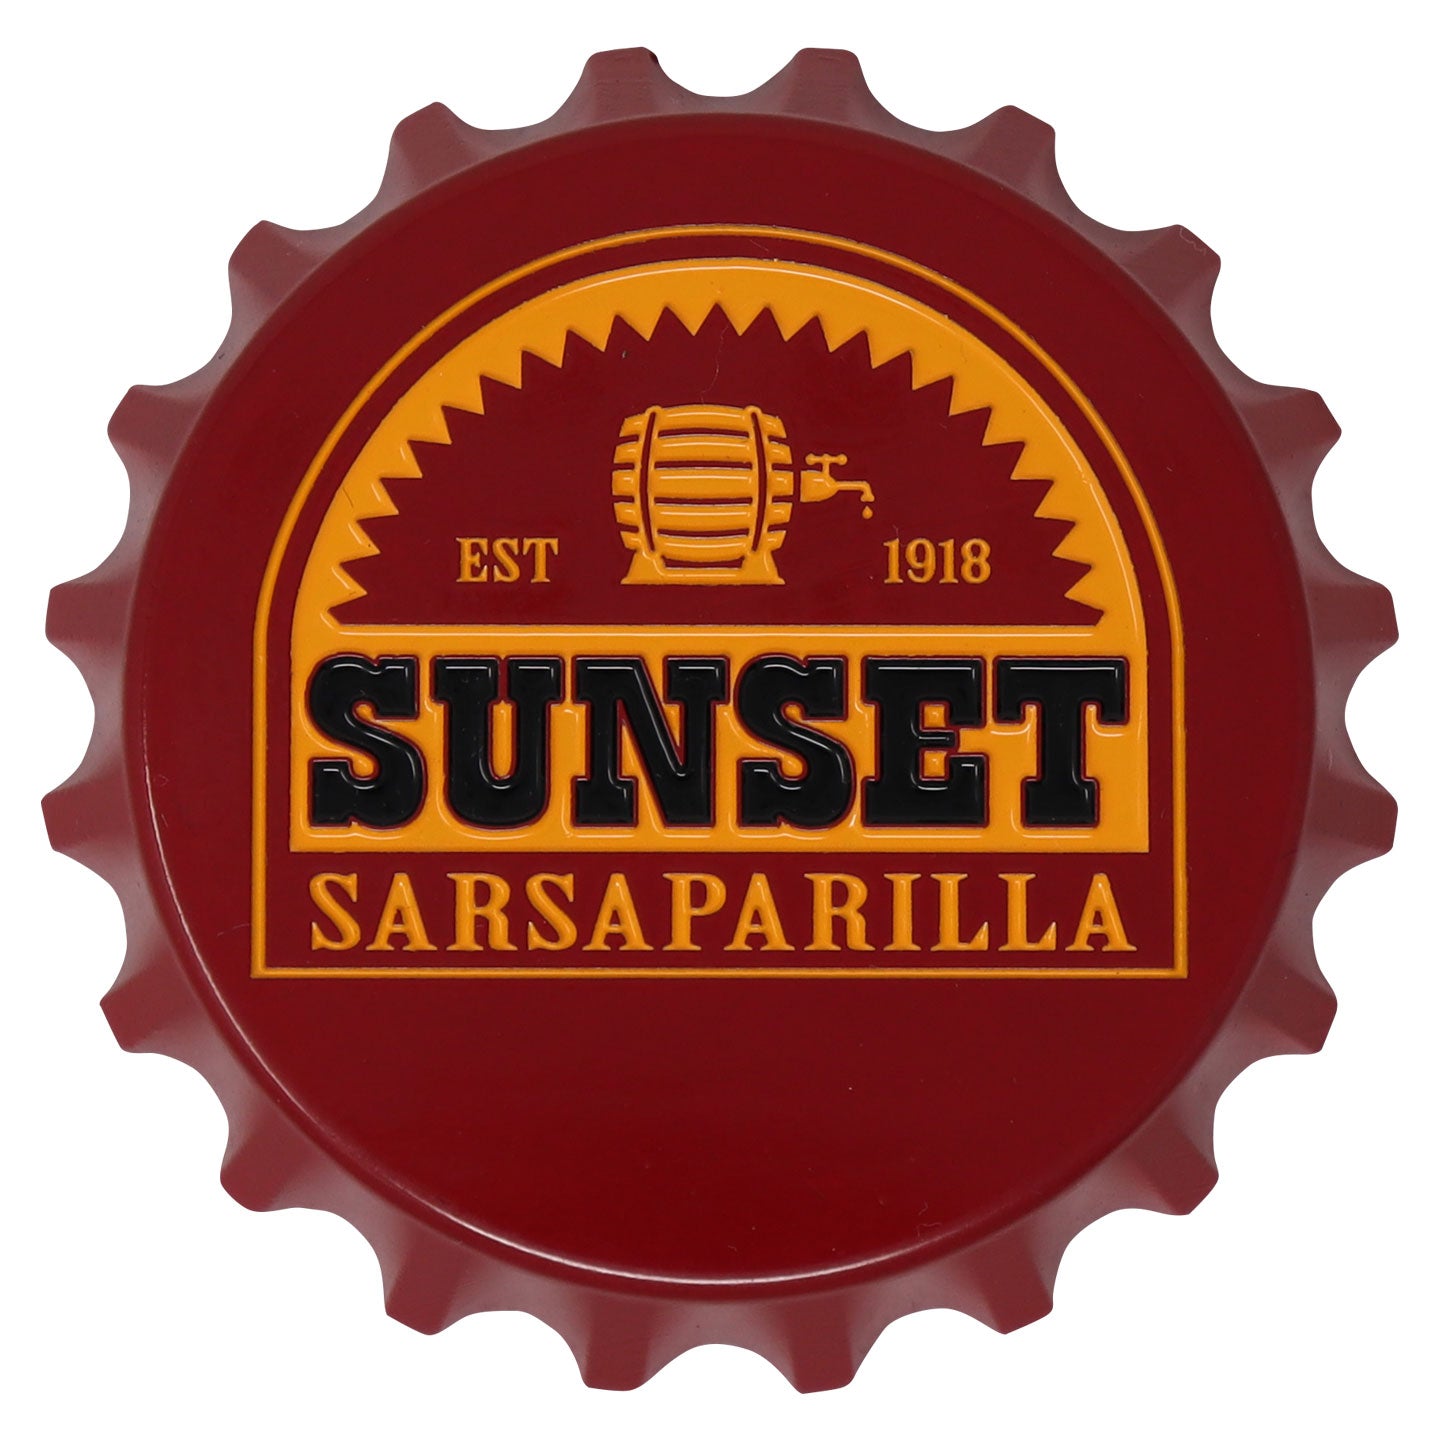 Fallout Sunset Sarsaparilla Bottle Opener